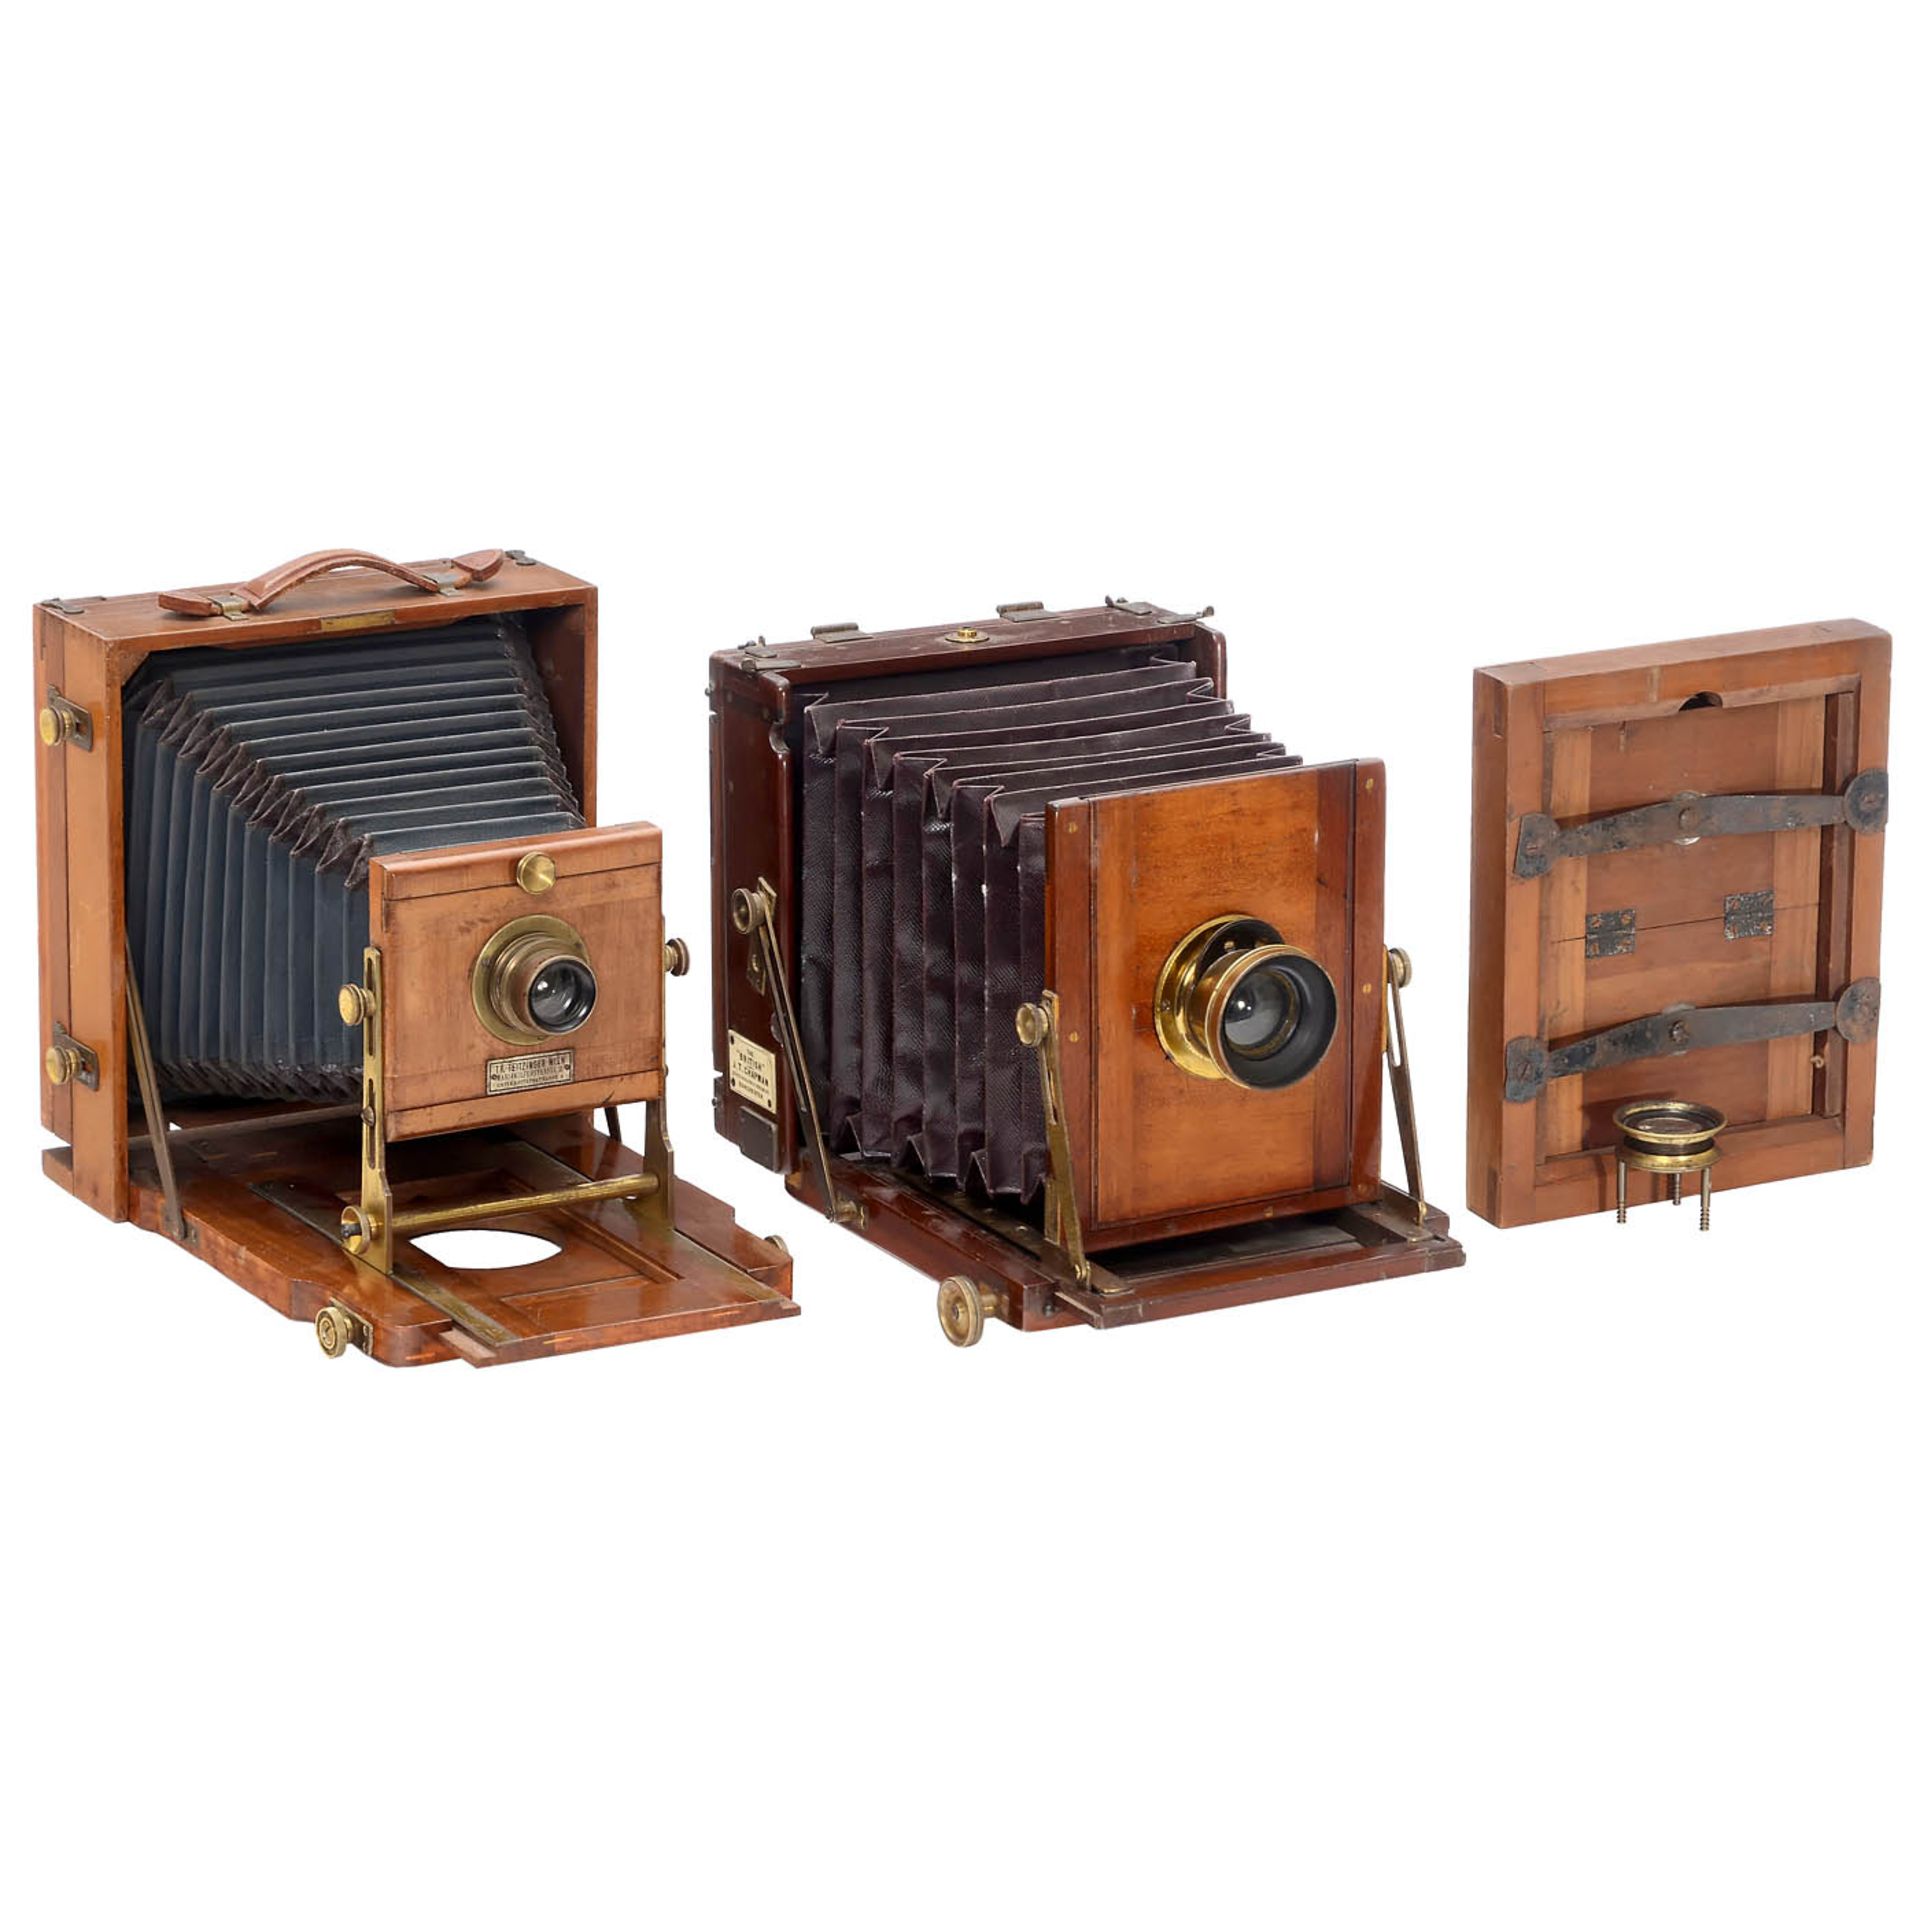 2 Field Cameras, c. 1910